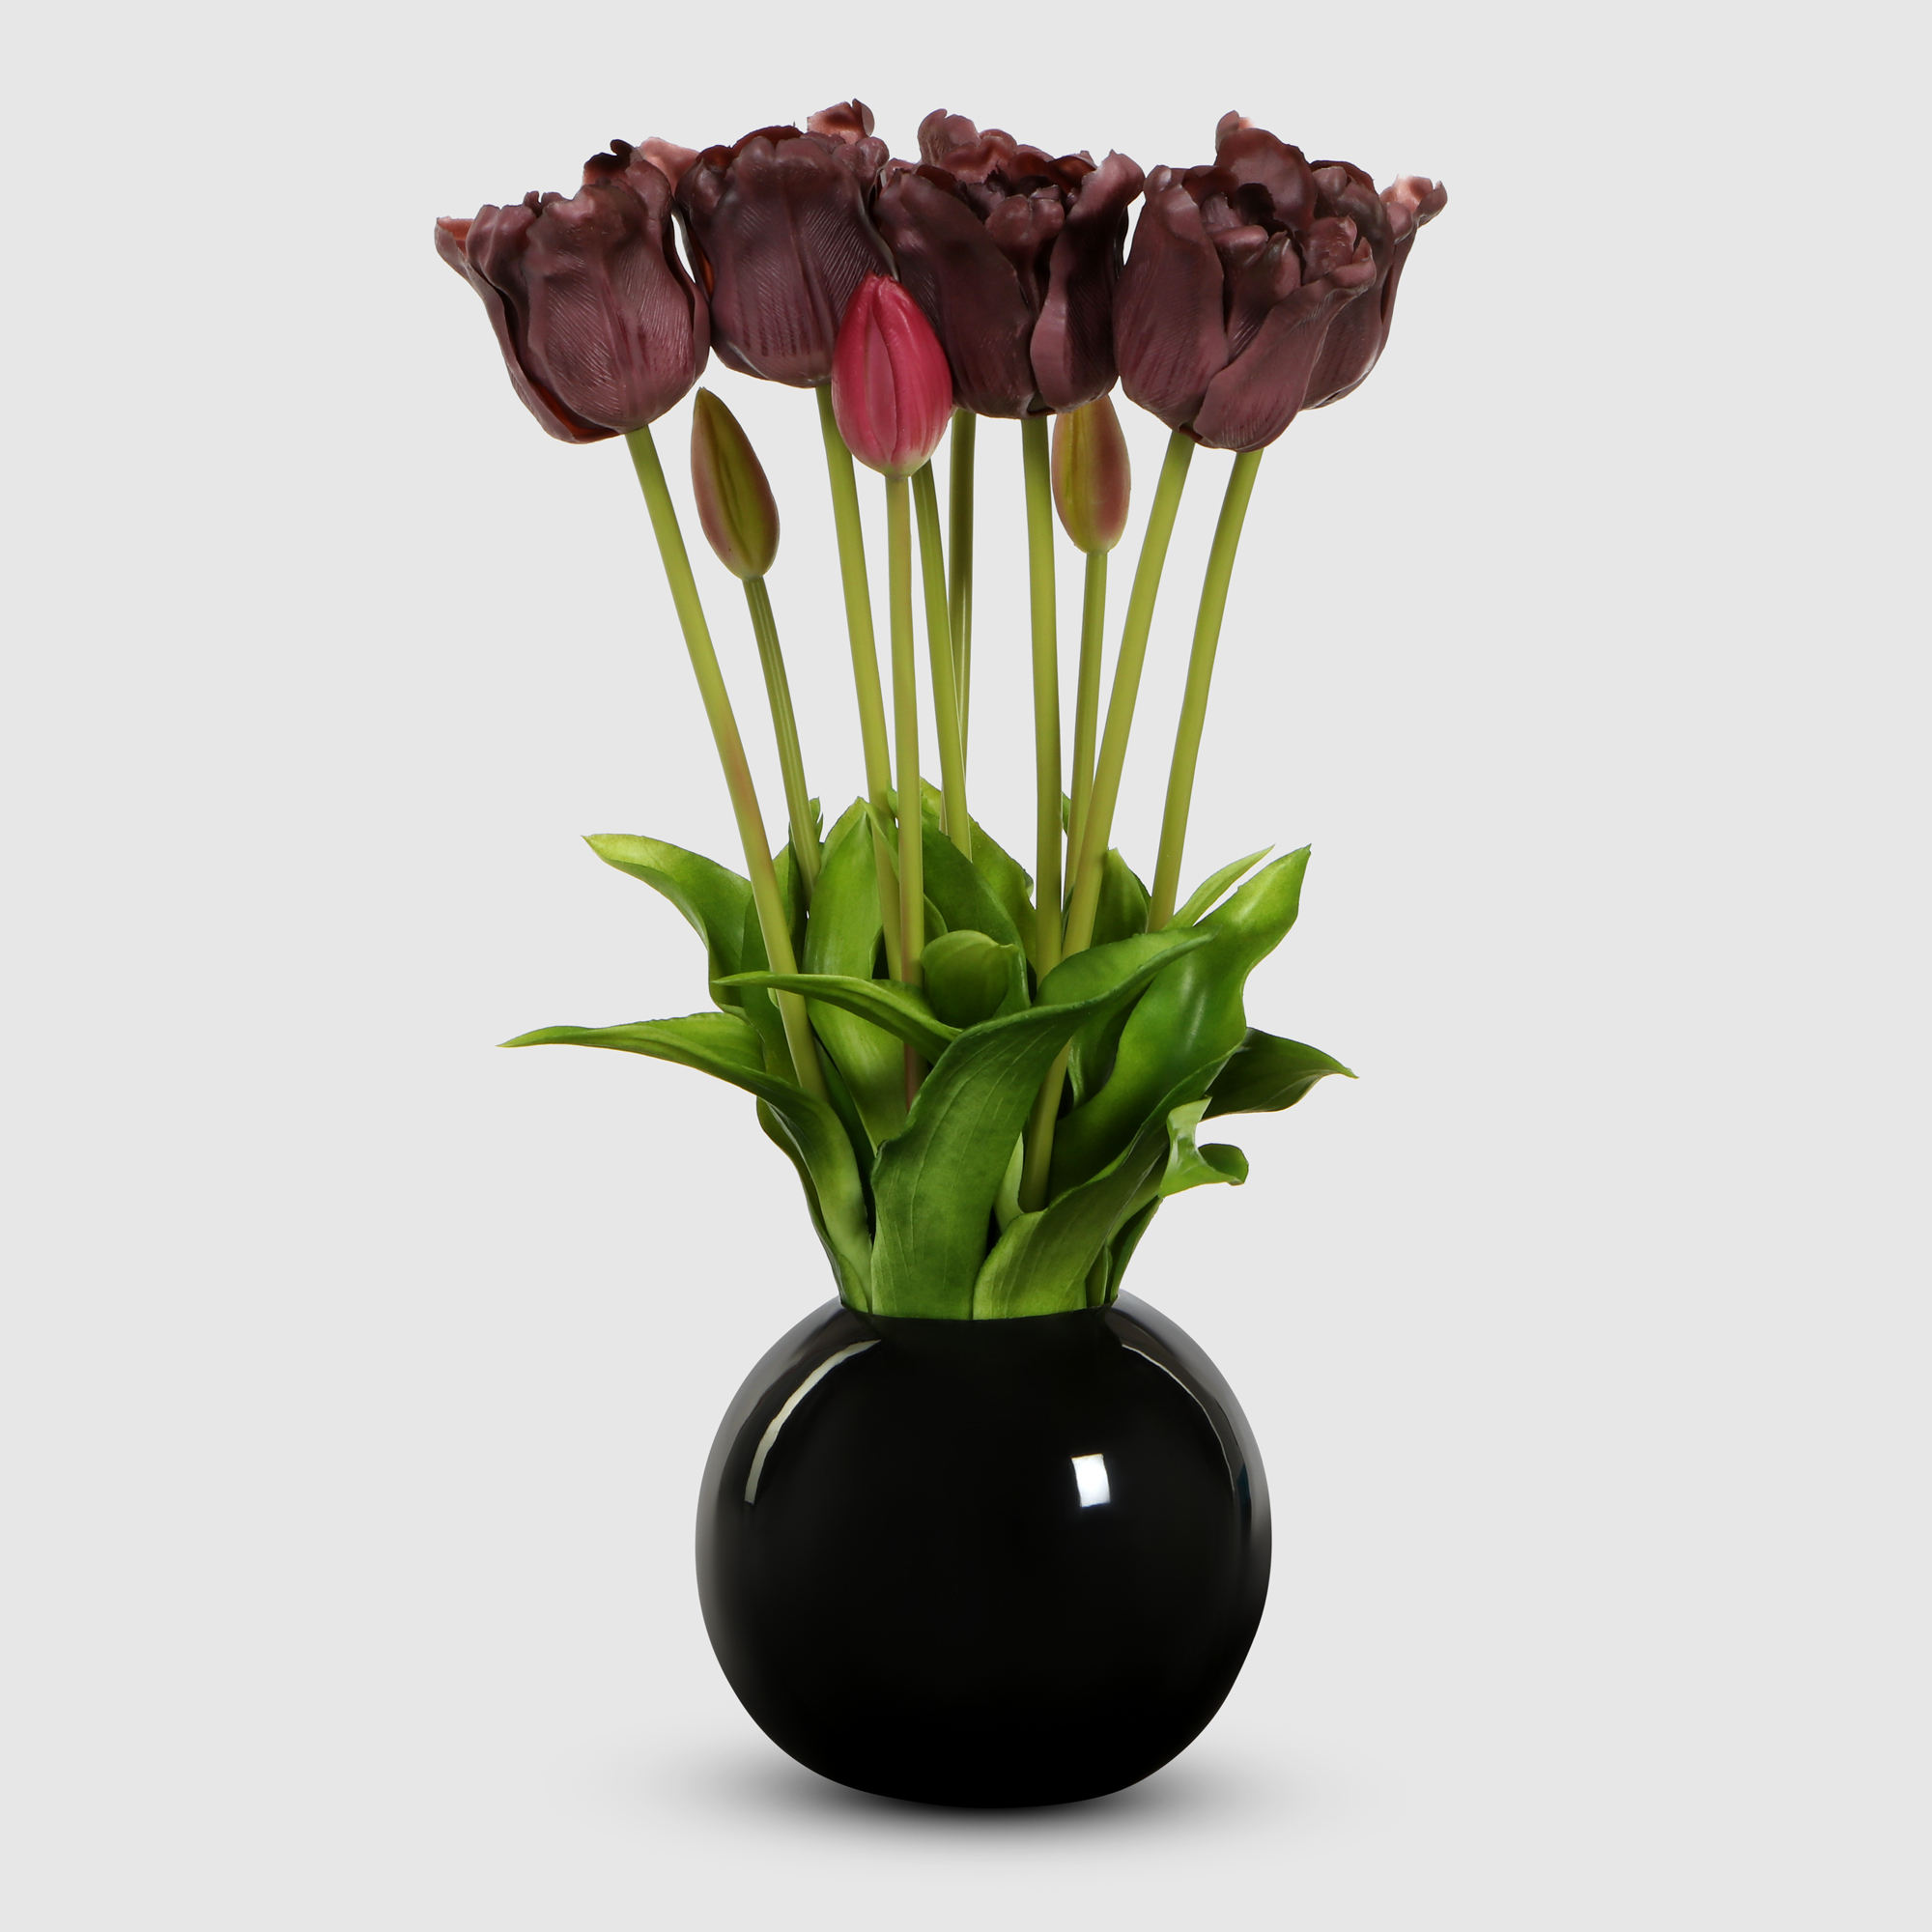 Тюльпаны Конэко-О 10151_Х2_10160 в черном кашпо 45 см, цвет красный